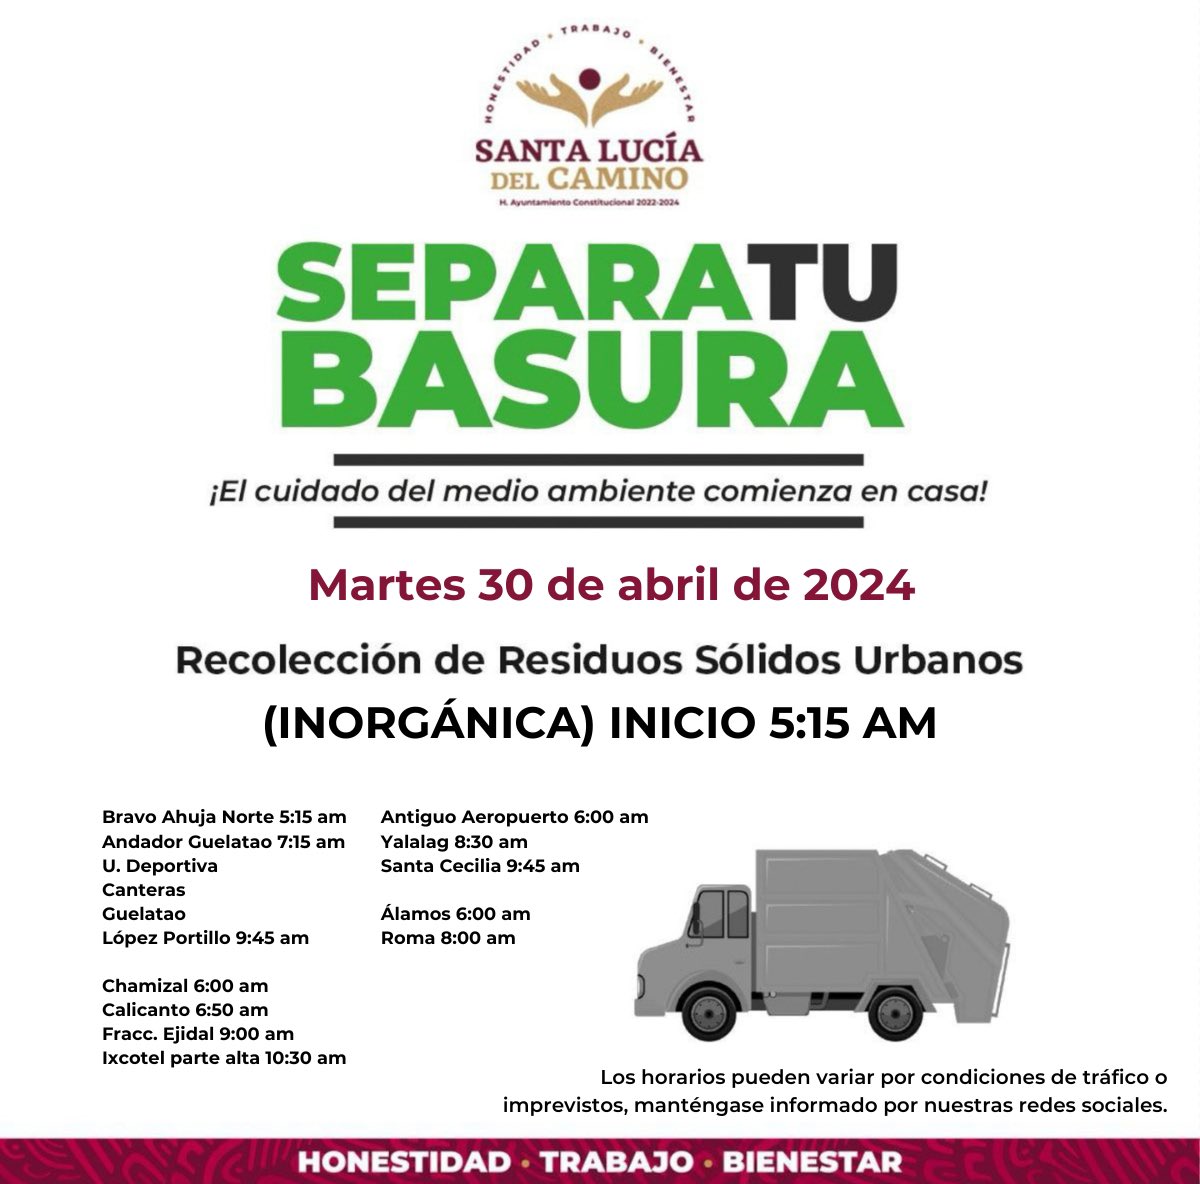 ¡El proyecto #CeroBasura avanza en Santa Lucía del Camino! Conoce las colonias donde pasará el camión y ponte atento al oír la campana. Ah y por favor, comparte la imagen con tus vecinos. #SantaLucíaDelCamino